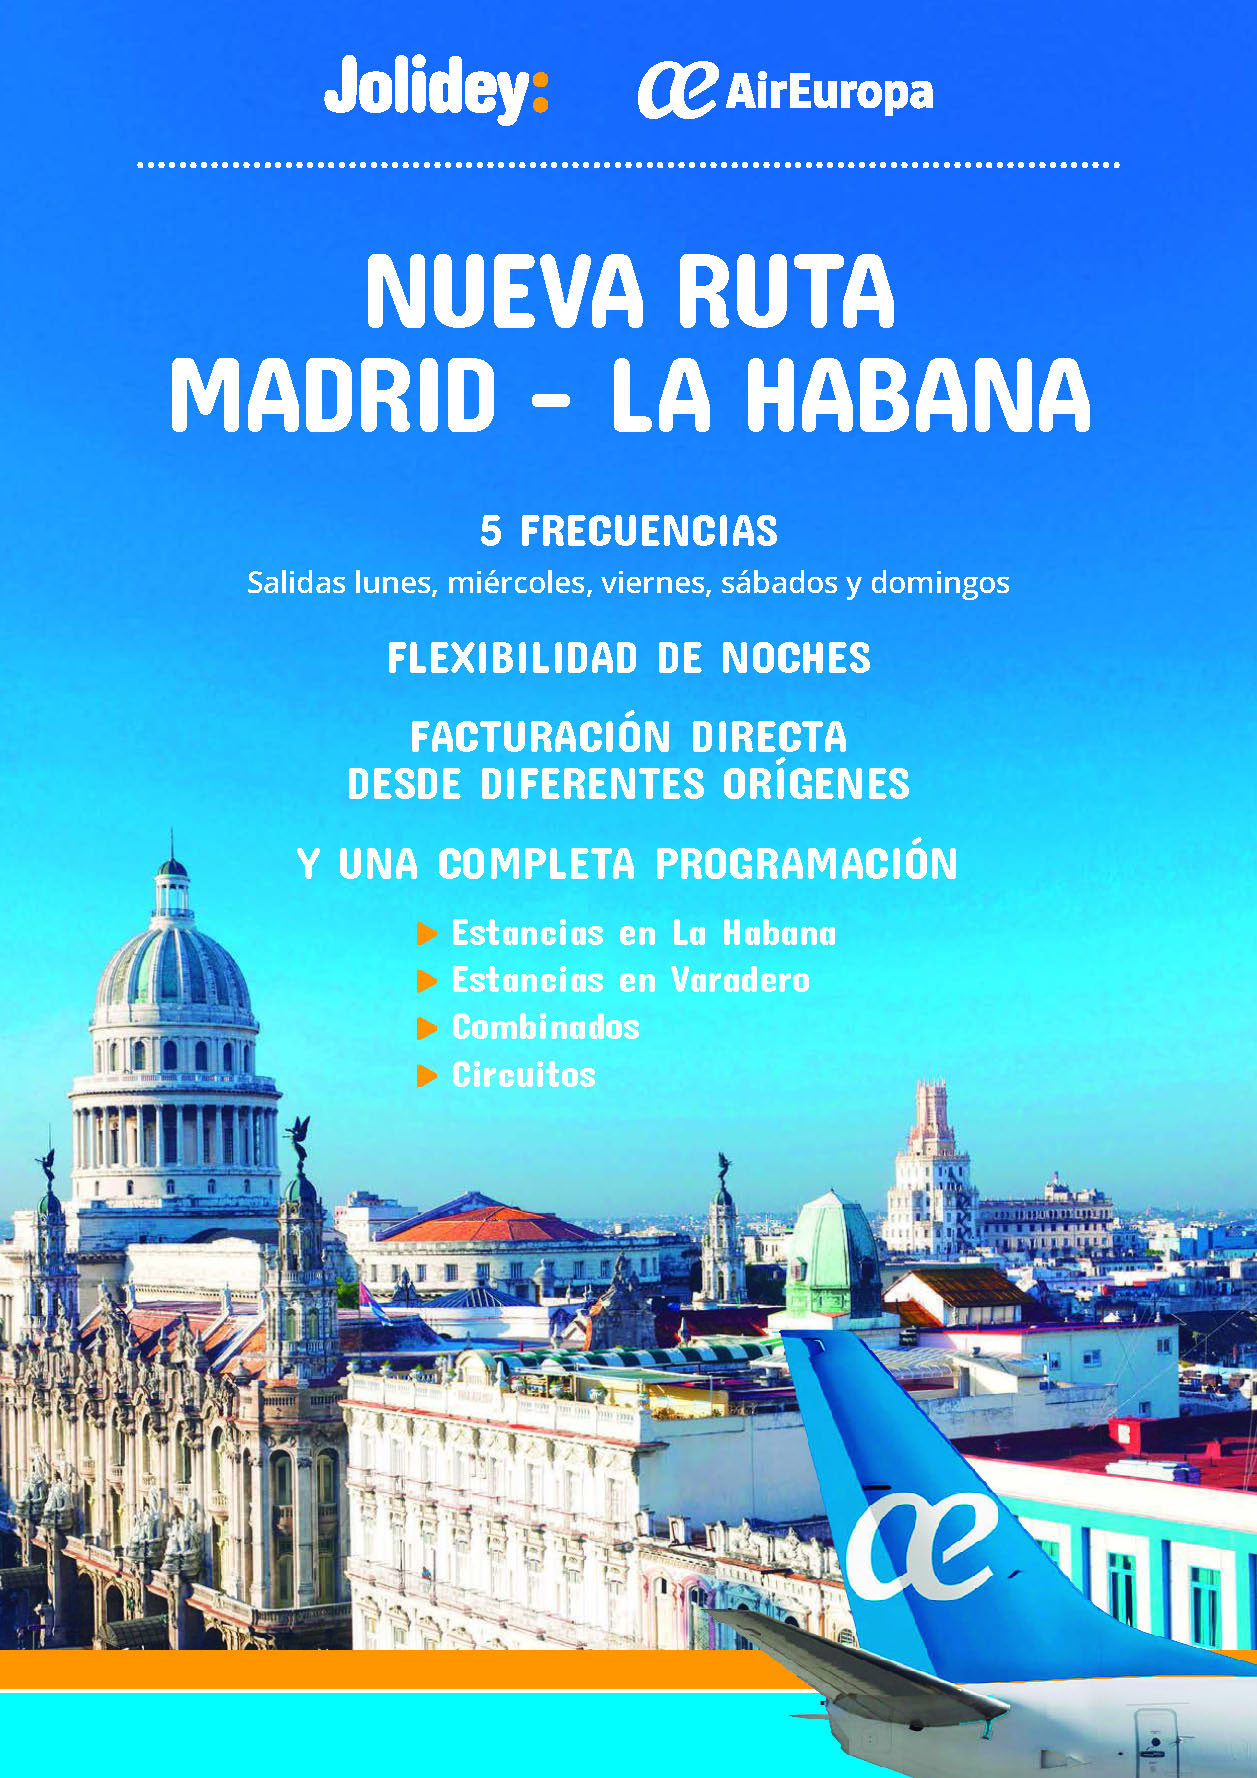 Oferta Jolidey Cuba estancias combinados La Habana Varadero y circuitos 9 dias salida desde Madrid Barcelona Bilbao Valencia e Islas